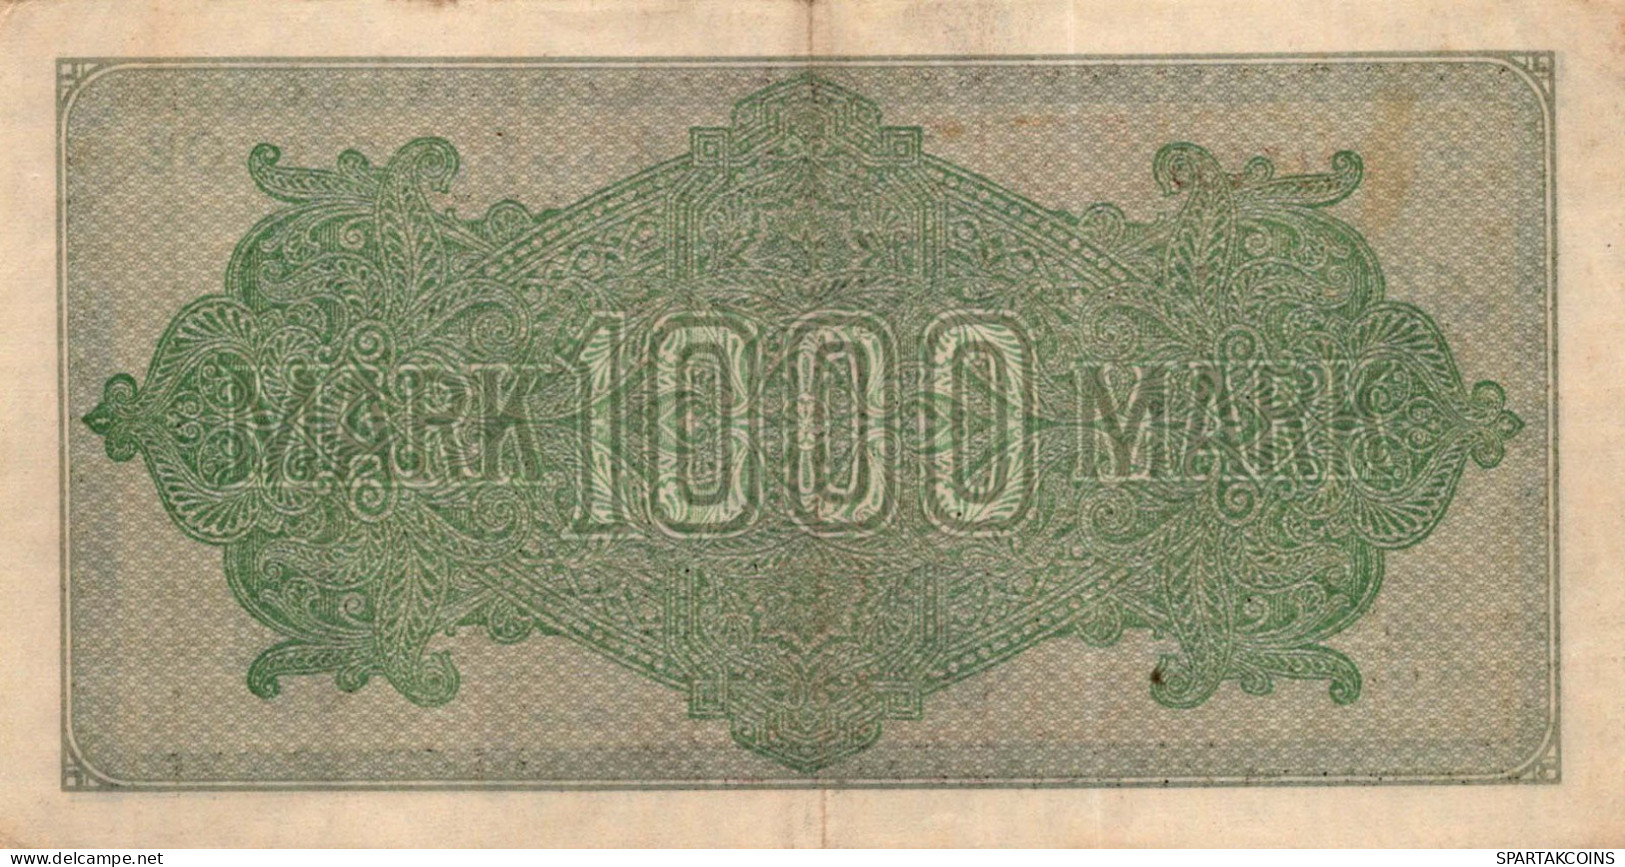 1000 MARK 1922 Stadt BERLIN DEUTSCHLAND Papiergeld Banknote #PL413 - Lokale Ausgaben